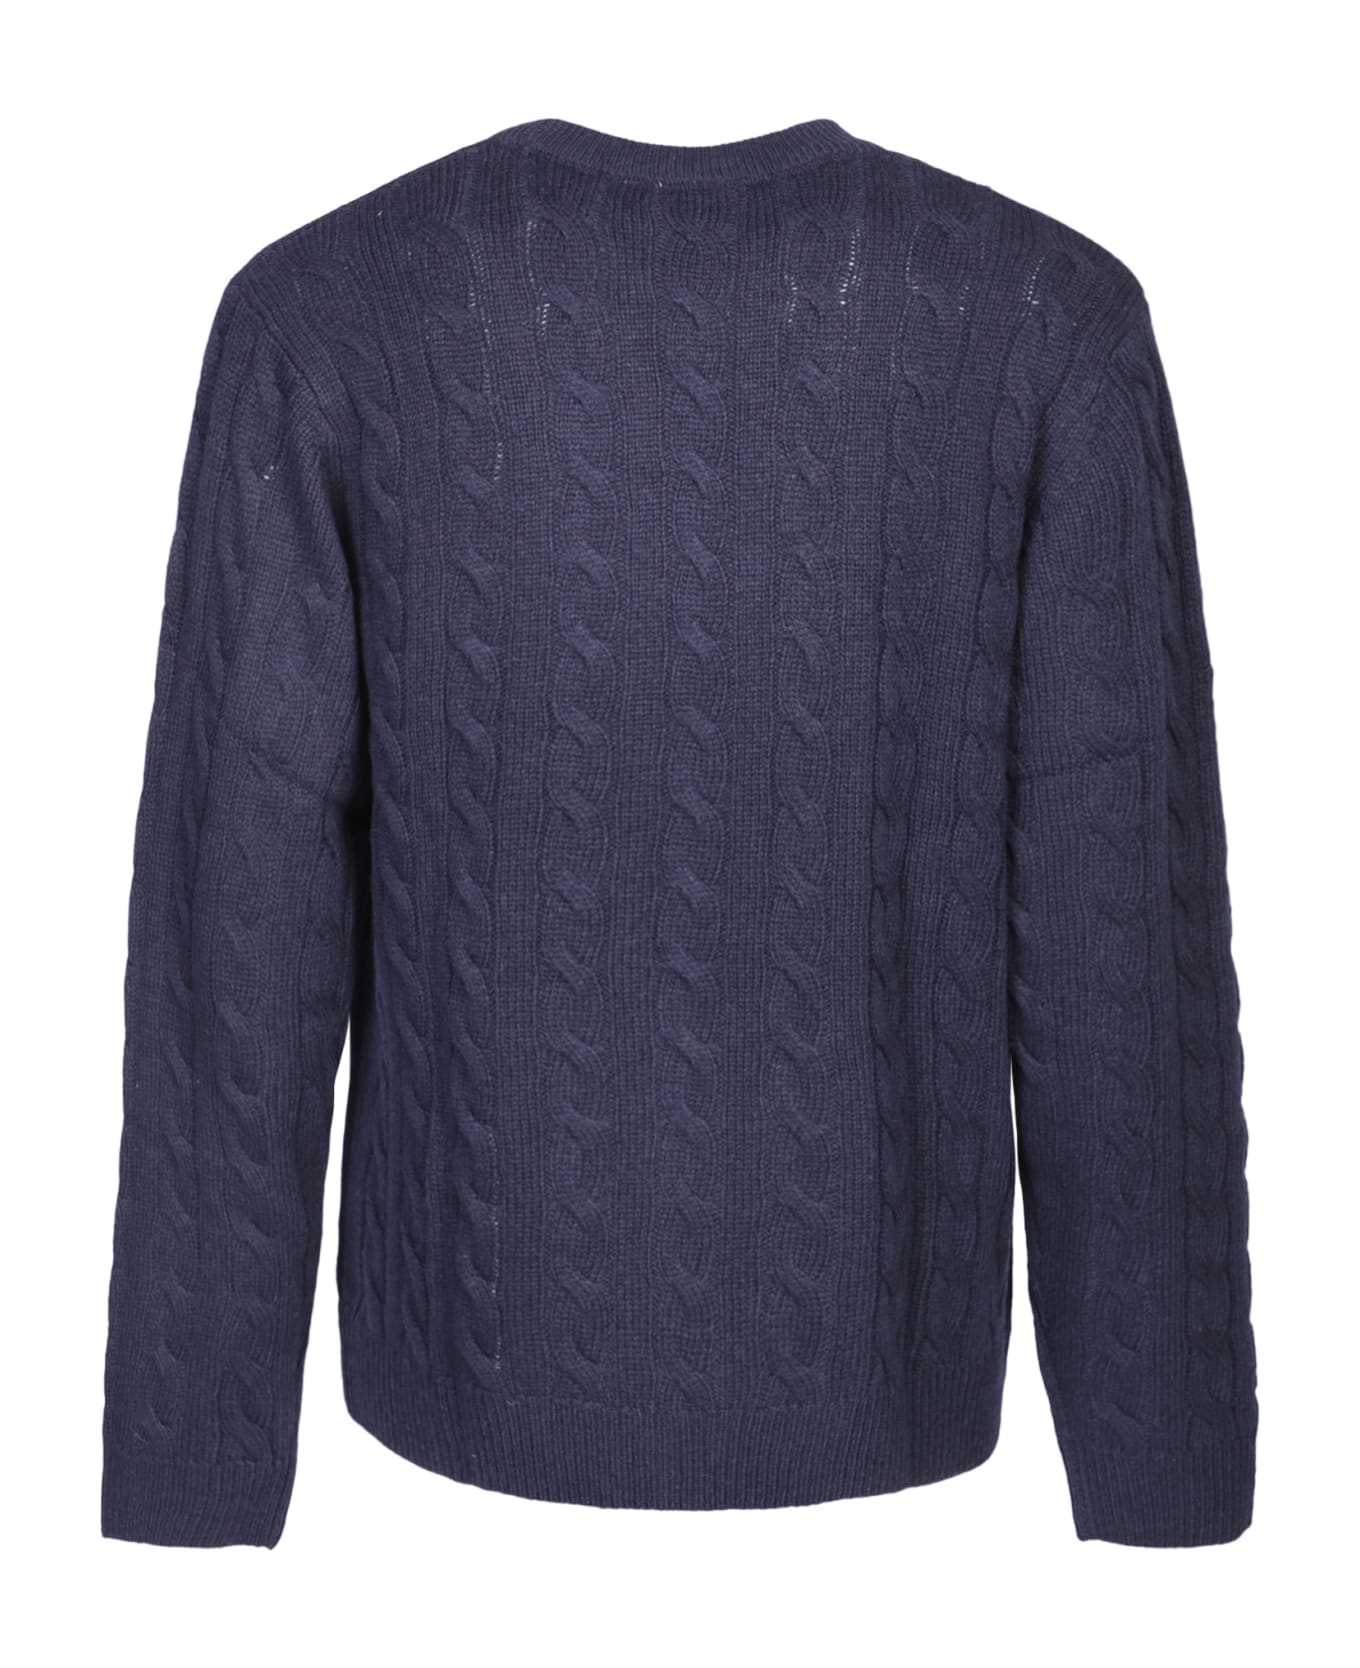 Carhartt Cambell Blue Sweater - Blue